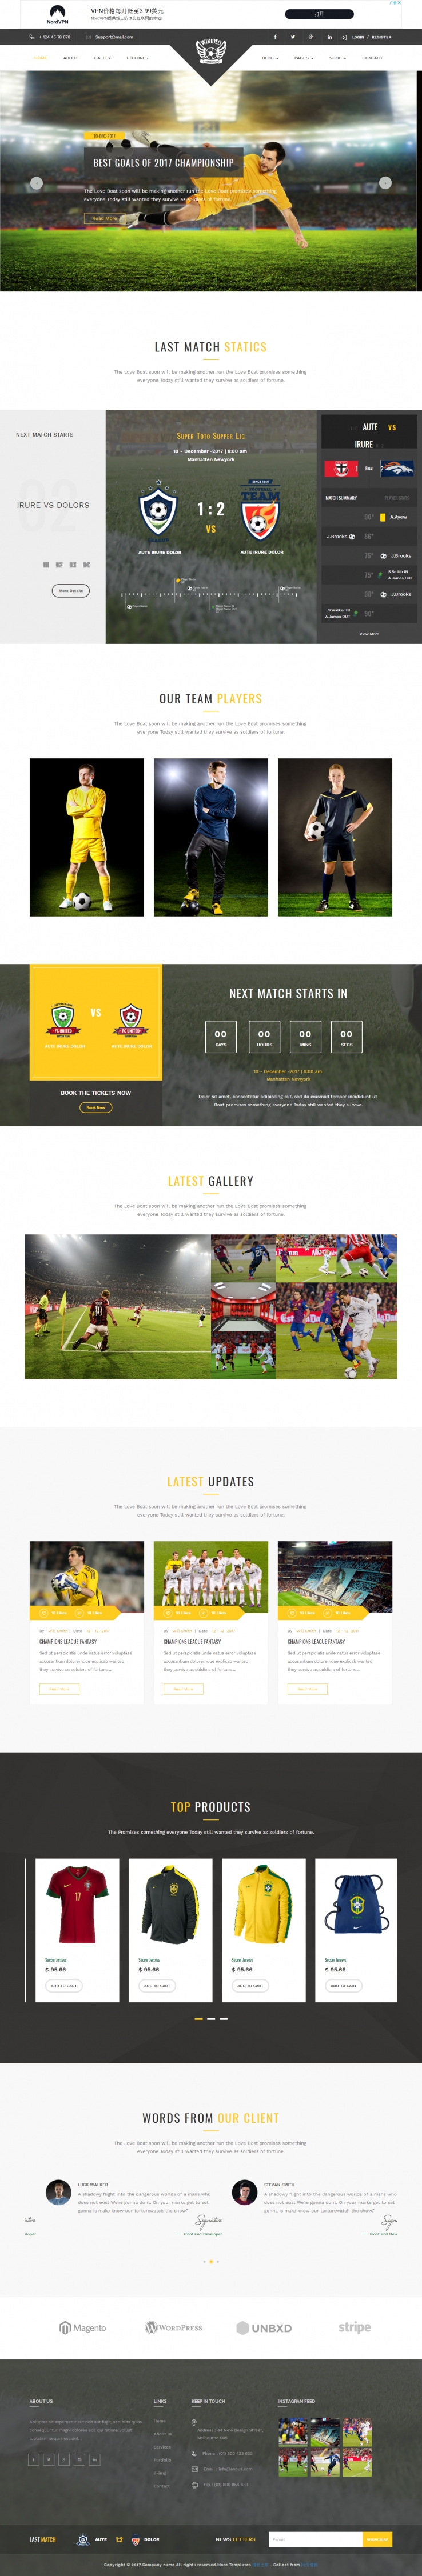 精美大气的足球体育竞技新闻网站模板下载